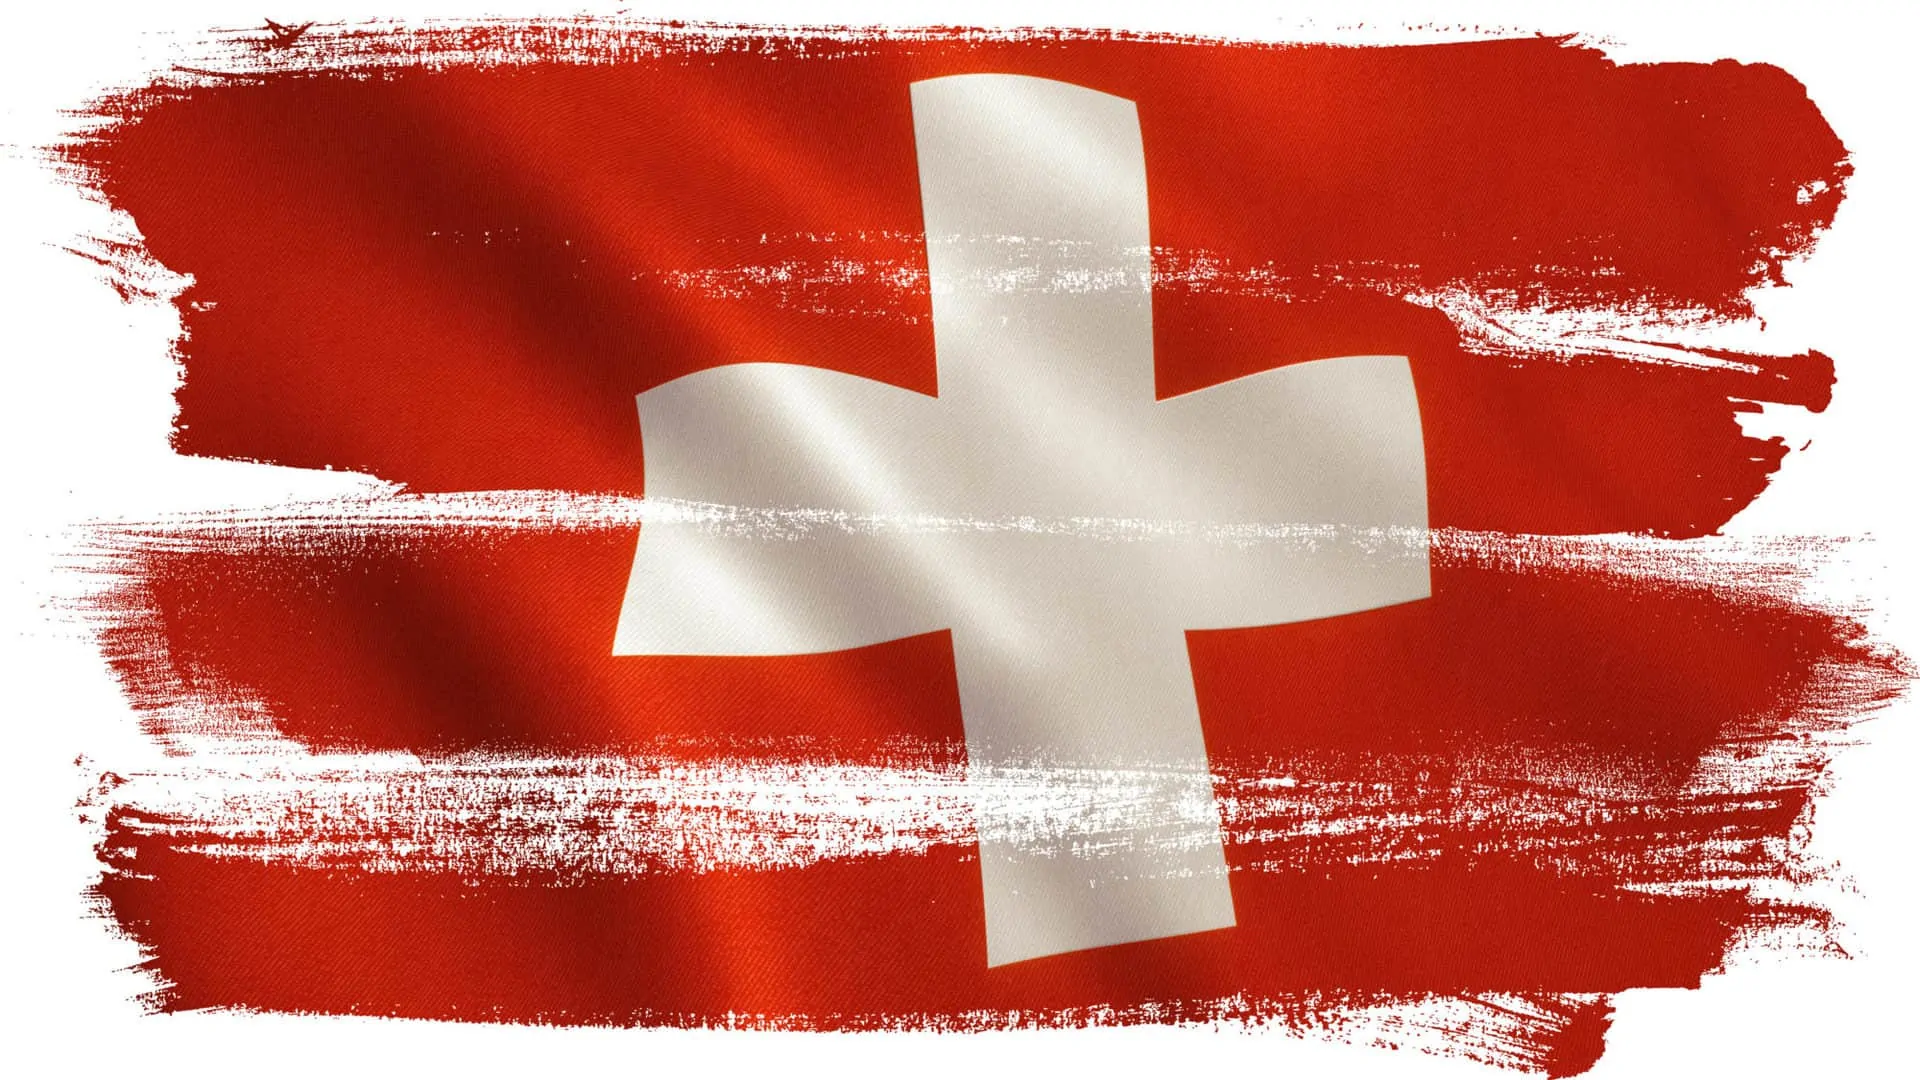 Versandkosten Schweiz